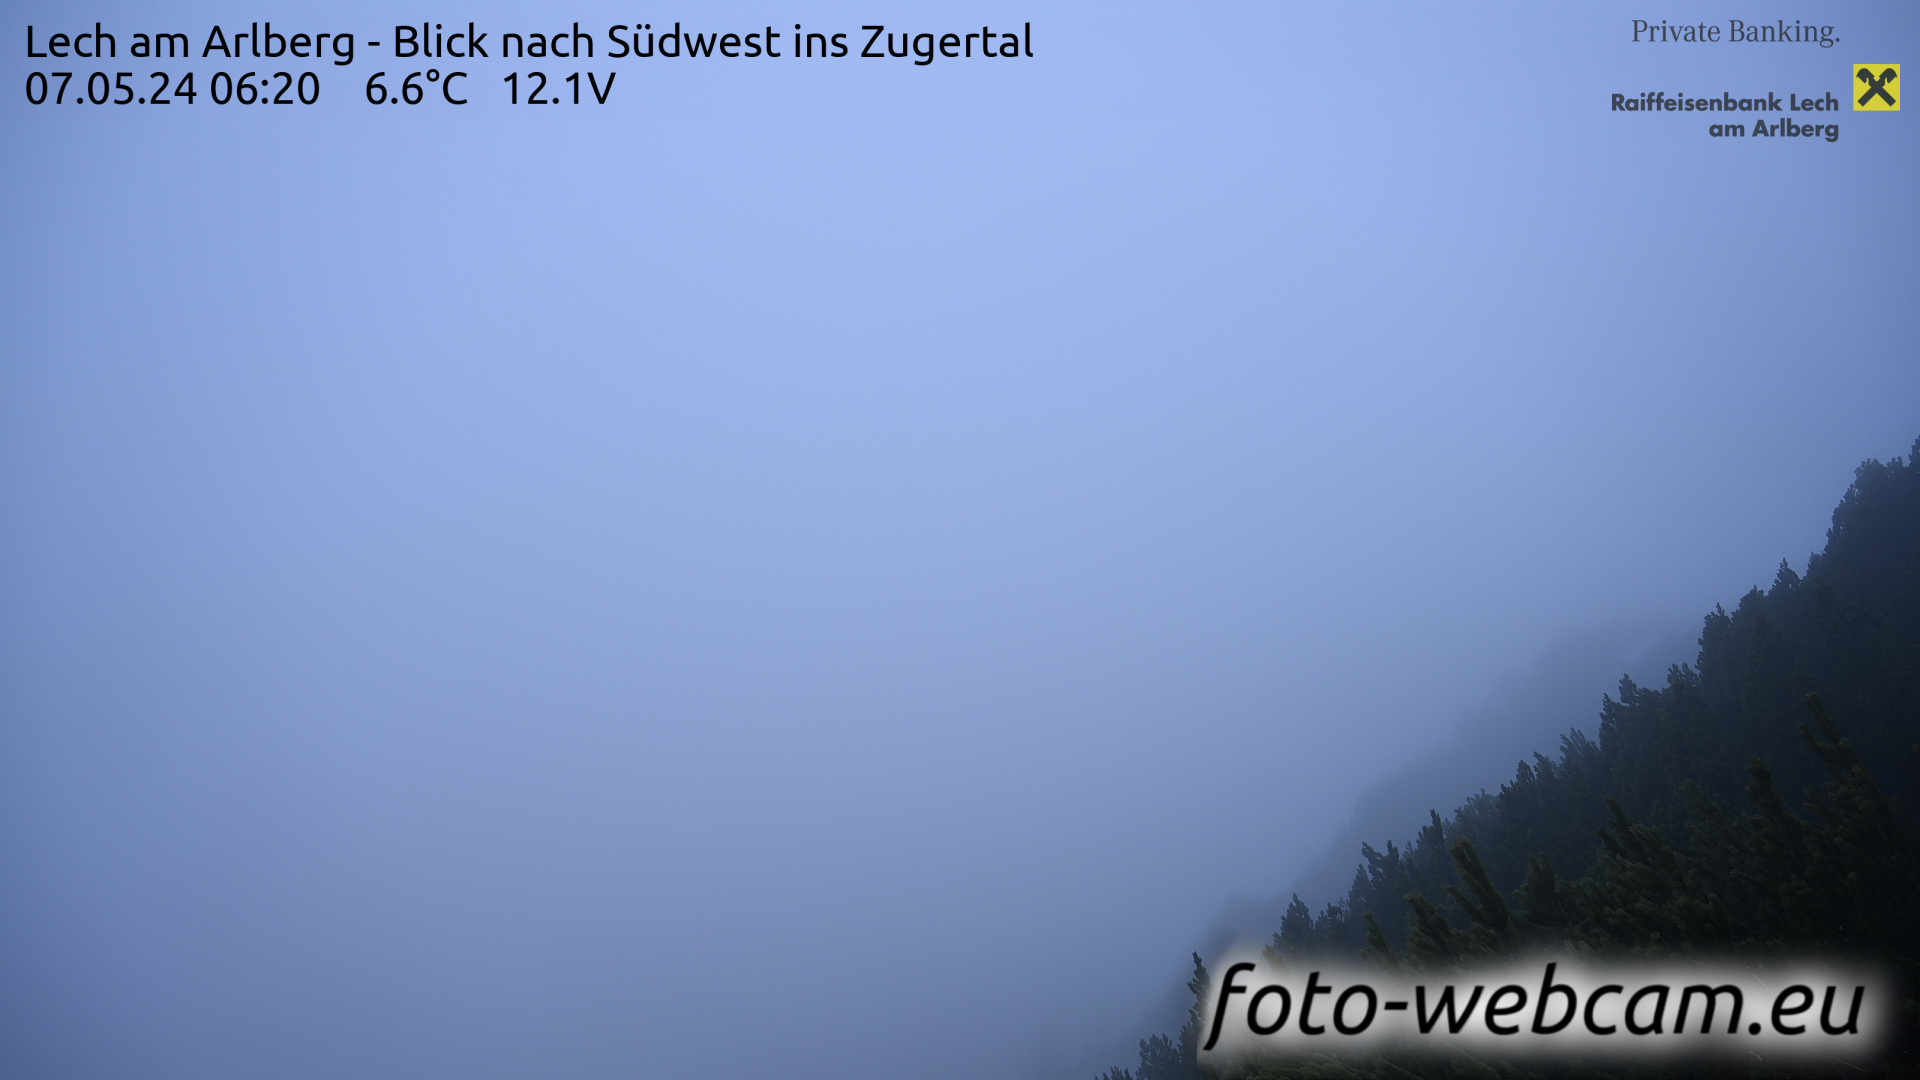 Lech am Arlberg Tue. 06:31